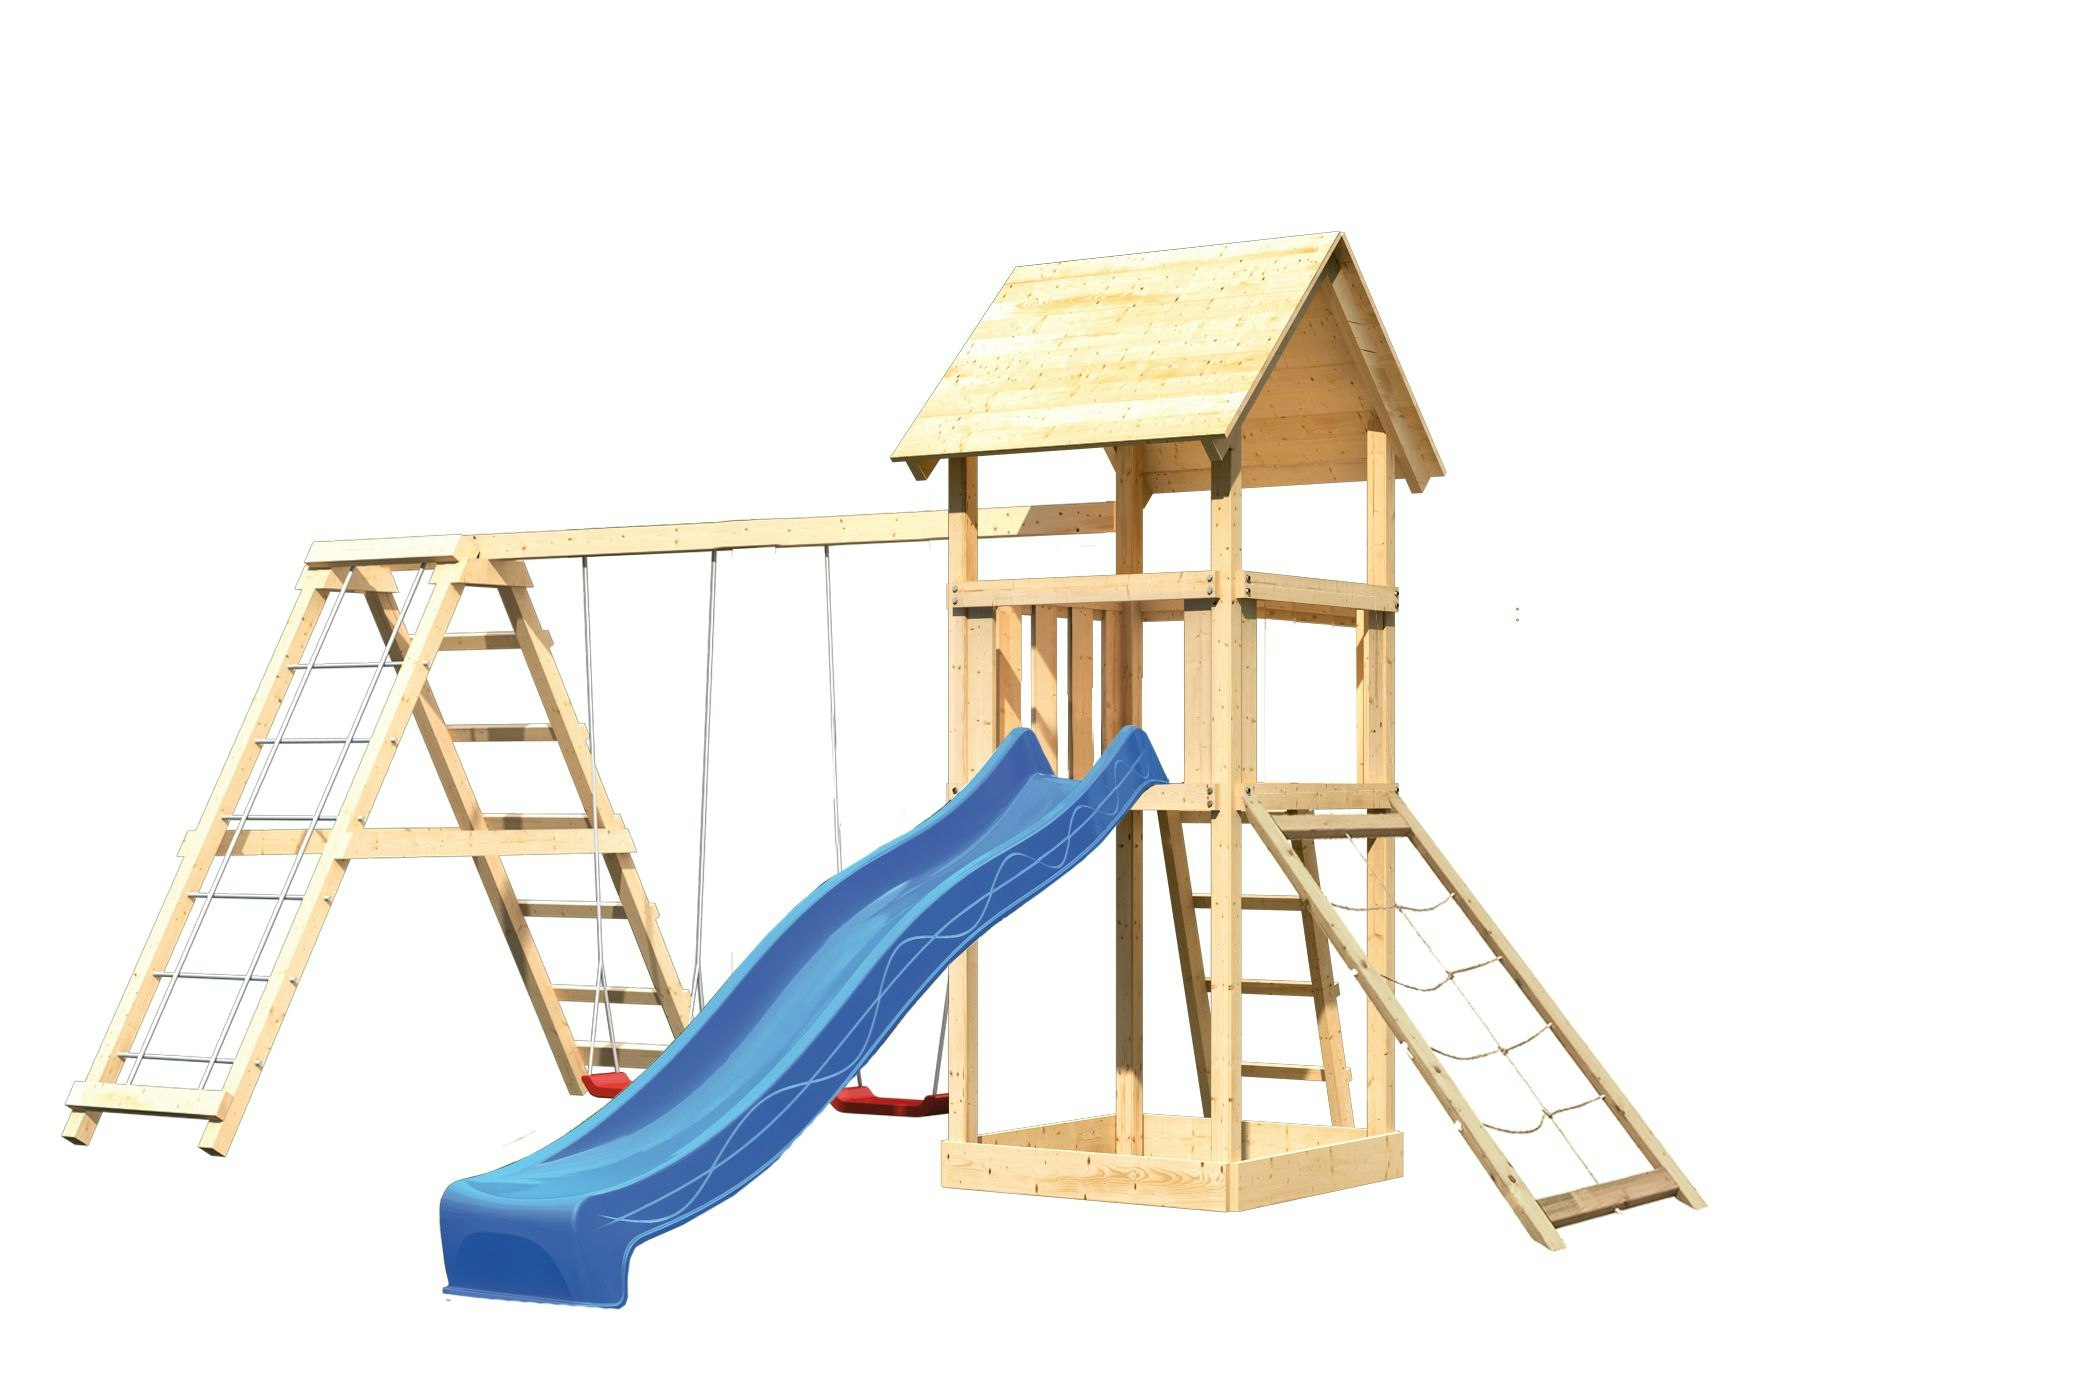 Akubi Kinderspielturm Lotti mit Satteldach inkl. Wellenrutsche, Doppelschaukelanbau, Klettergerüst und Netzrampe inkl. gratis Zubehörset